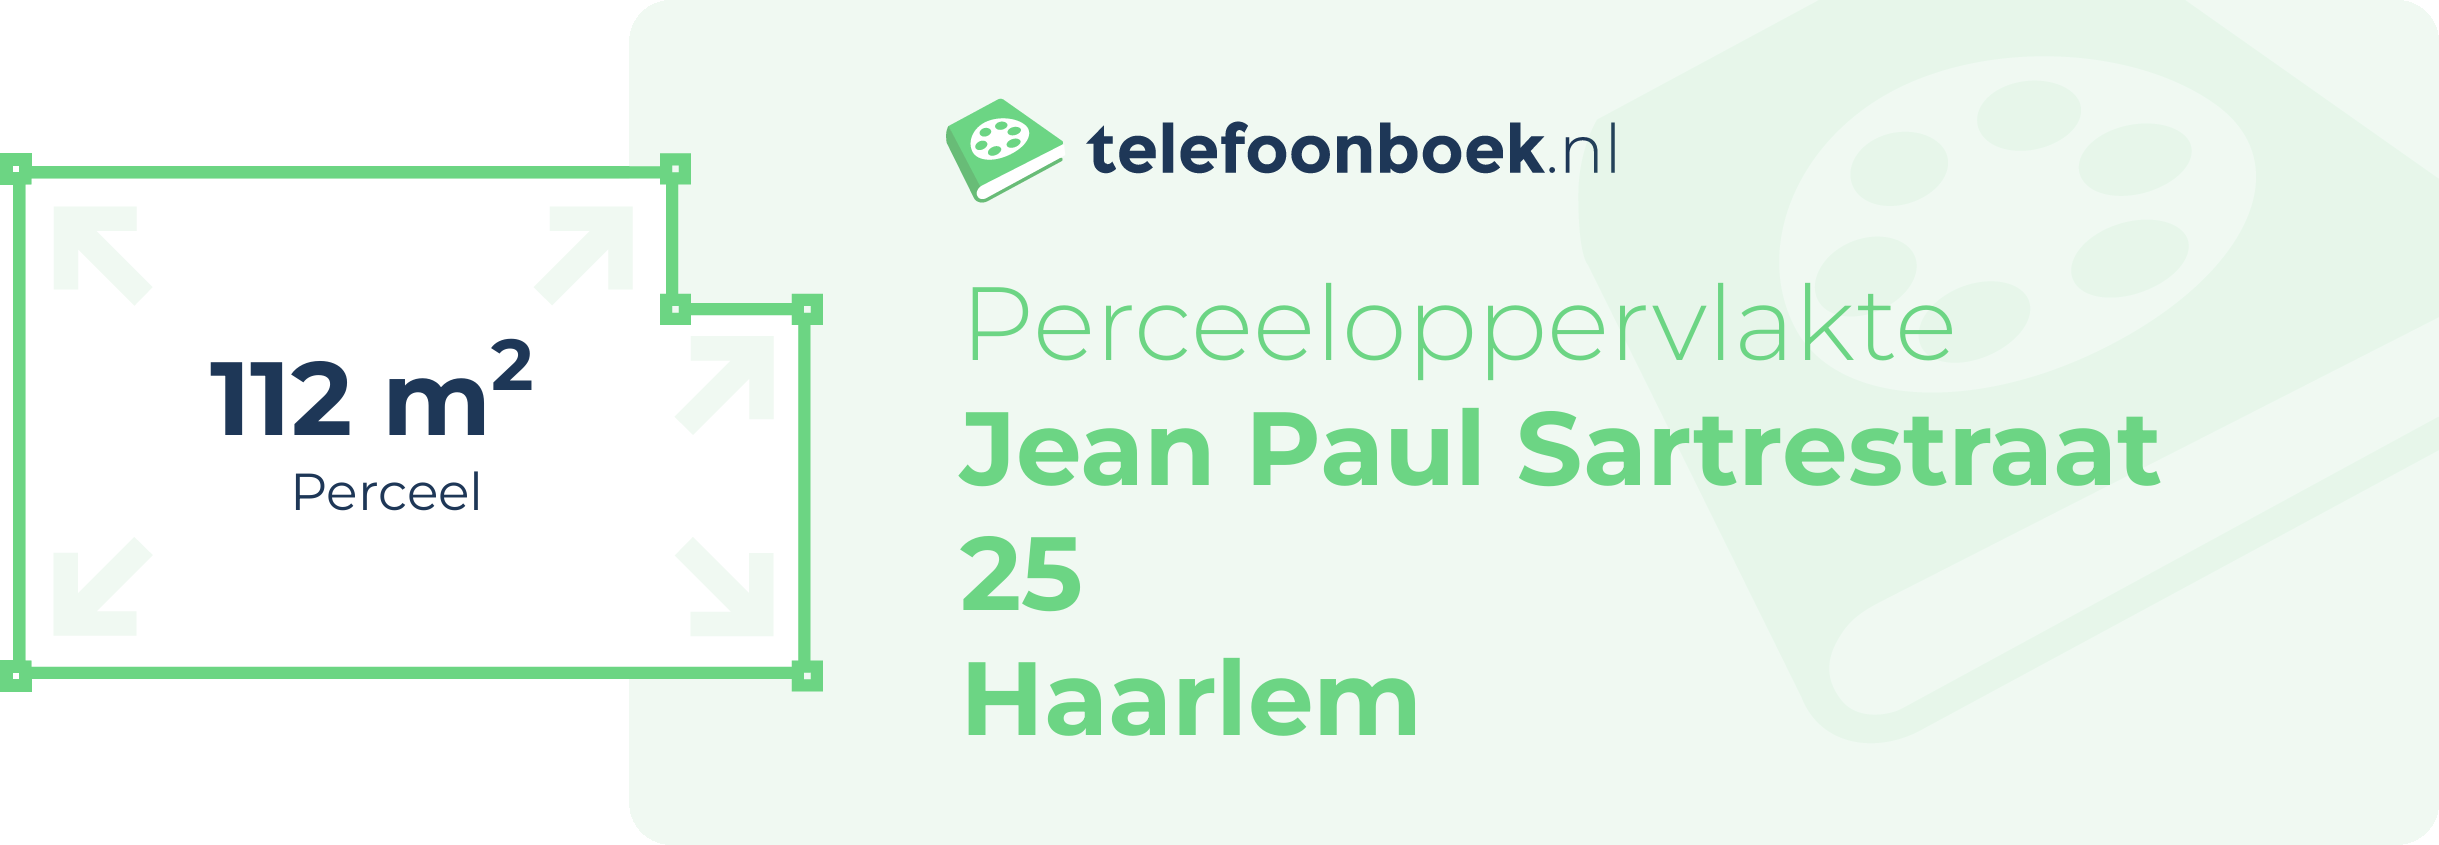 Perceeloppervlakte Jean Paul Sartrestraat 25 Haarlem